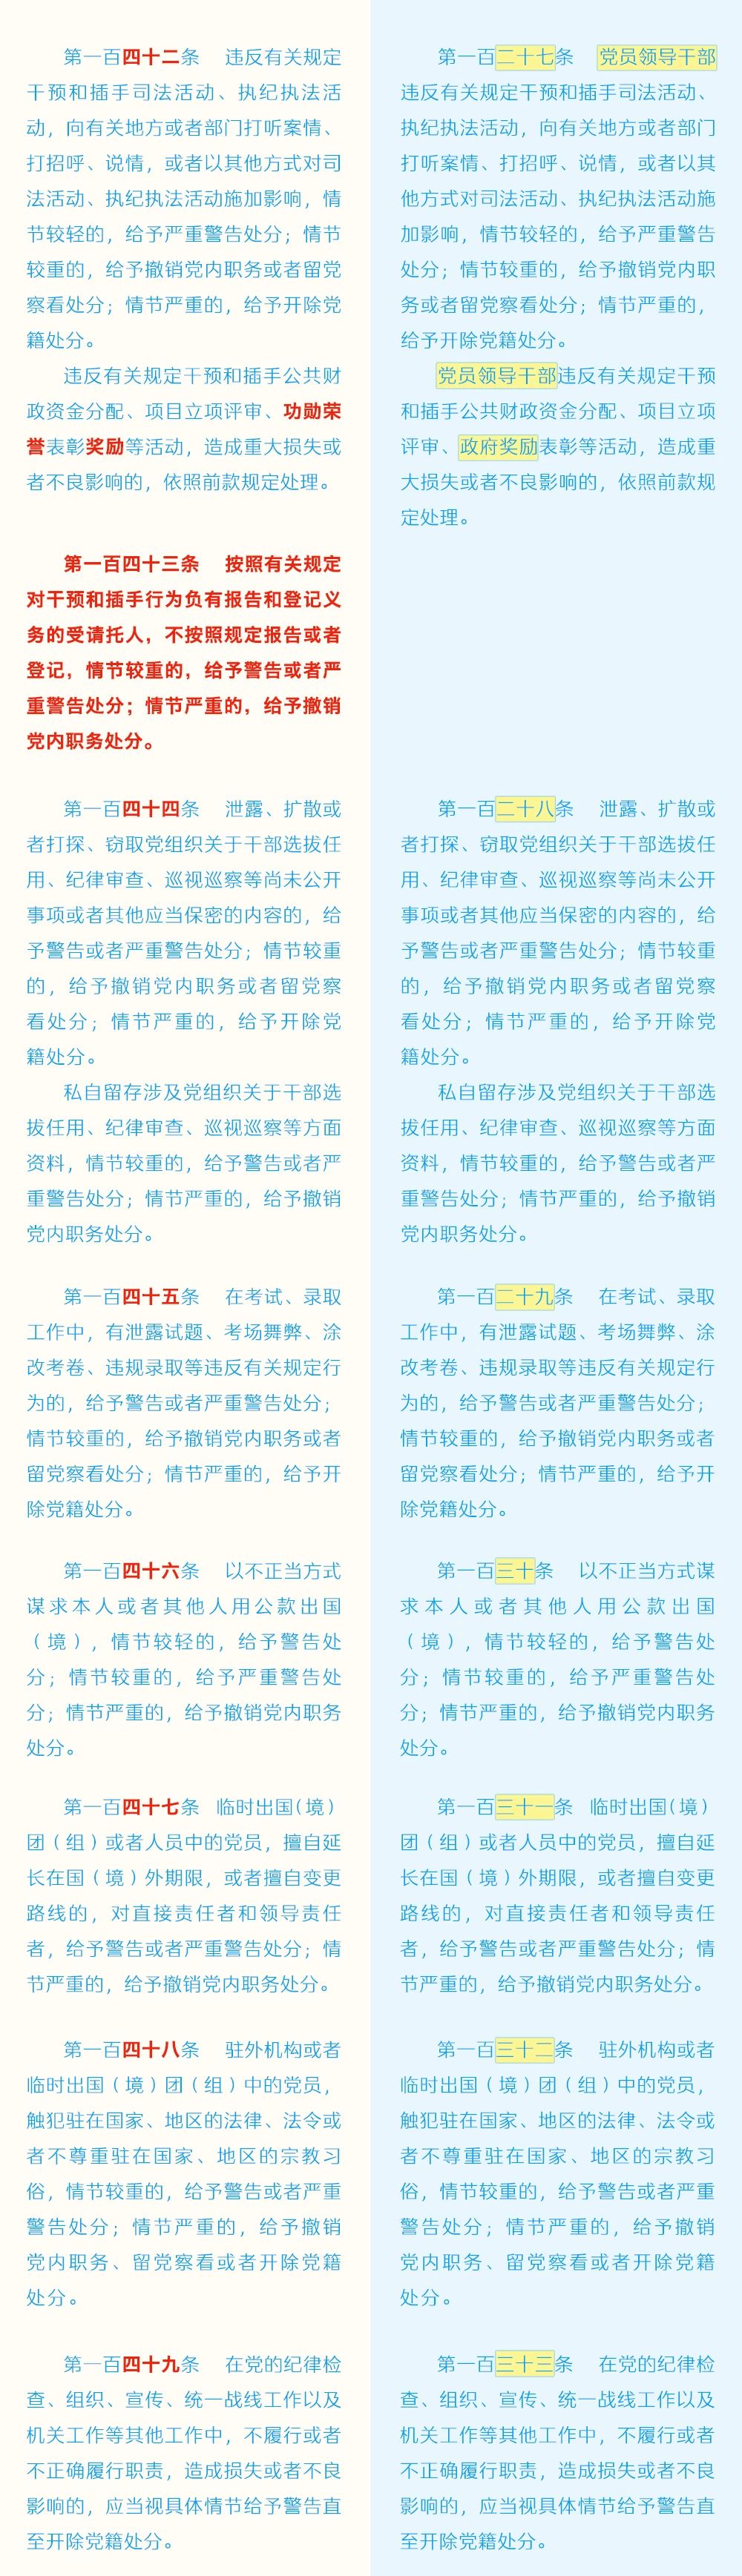 《中国共产党纪律处分条例》修订条文对照表21.jpg